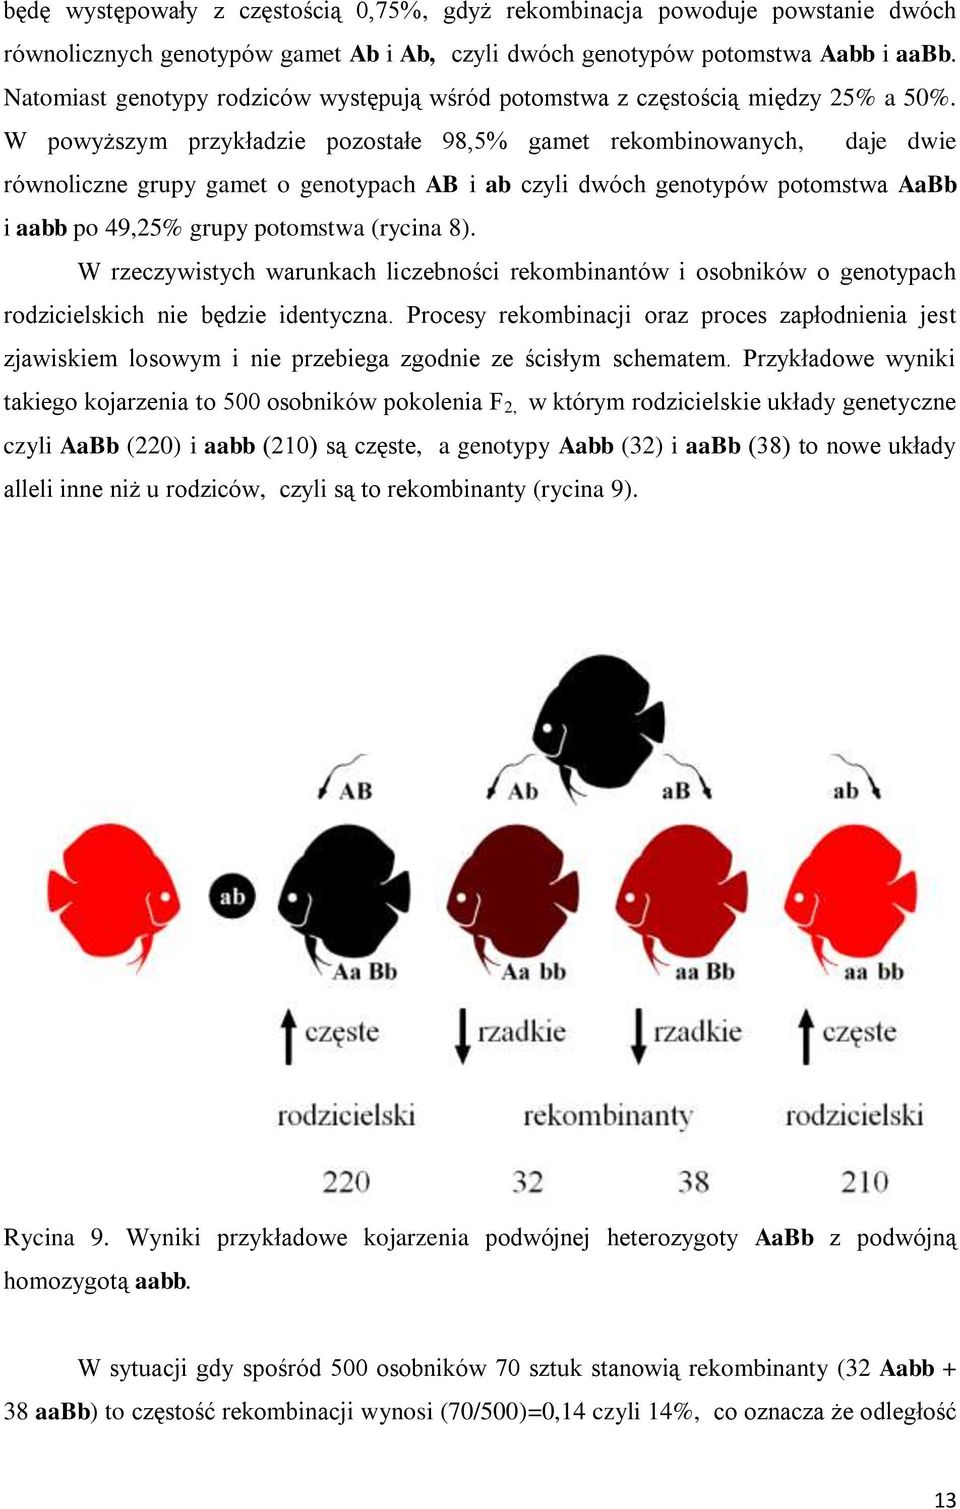 W powyższym przykładzie pozostałe 98,5% gamet rekombinowanych, daje dwie równoliczne grupy gamet o genotypach AB i ab czyli dwóch genotypów potomstwa AaBb i aabb po 49,25% grupy potomstwa (rycina 8).